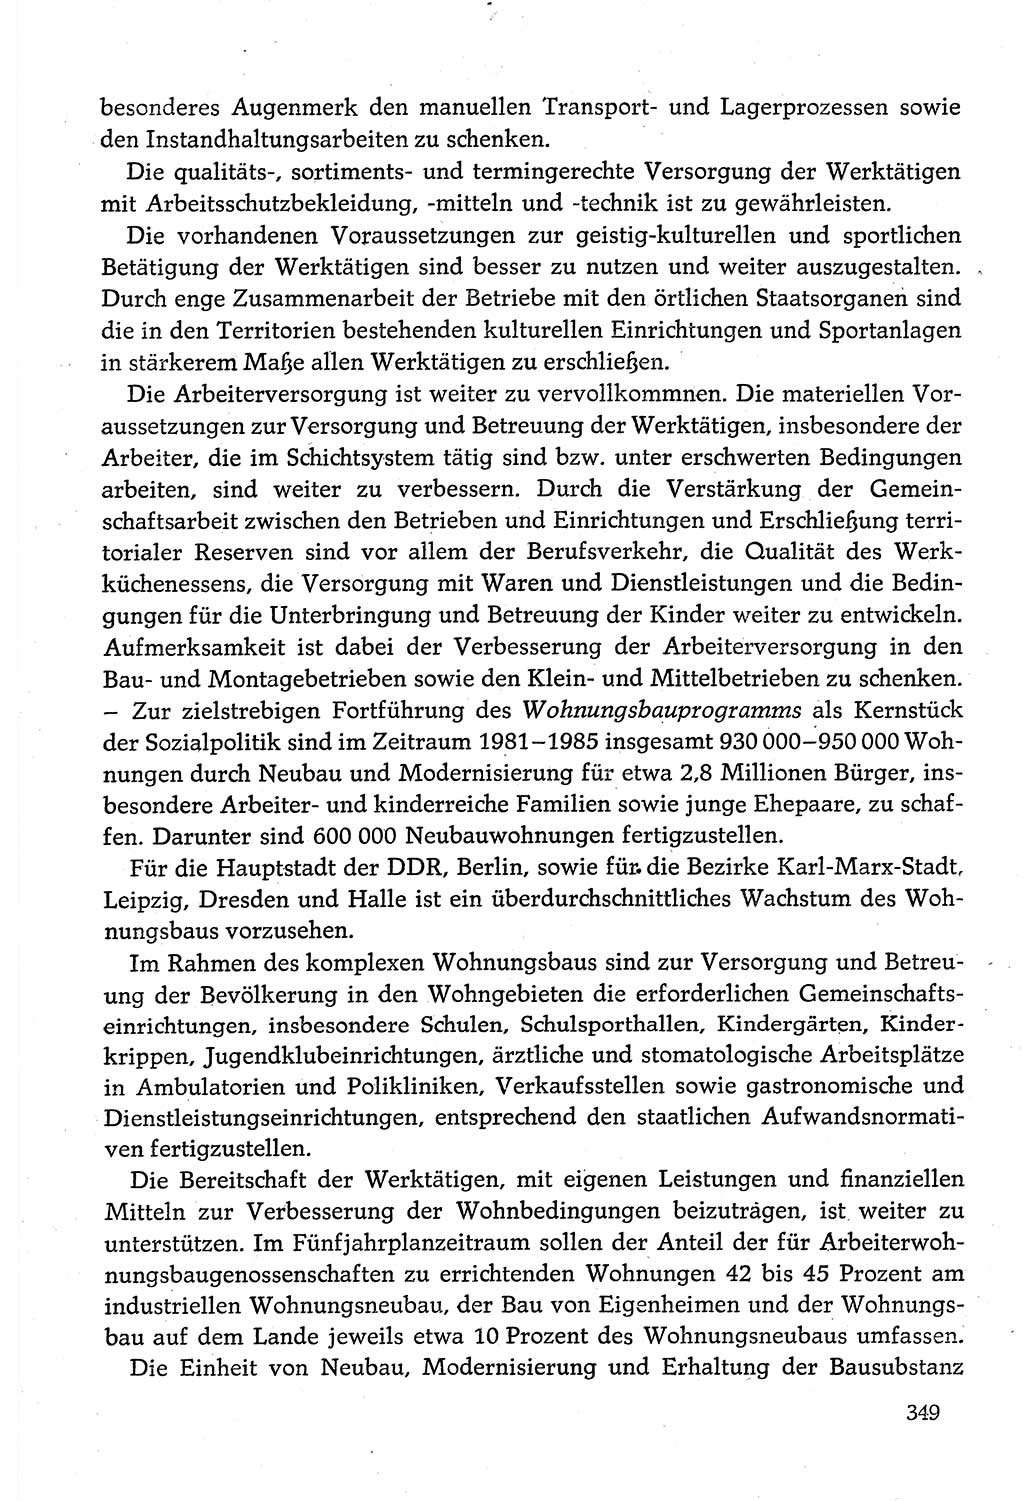 Dokumente der Sozialistischen Einheitspartei Deutschlands (SED) [Deutsche Demokratische Republik (DDR)] 1980-1981, Seite 349 (Dok. SED DDR 1980-1981, S. 349)